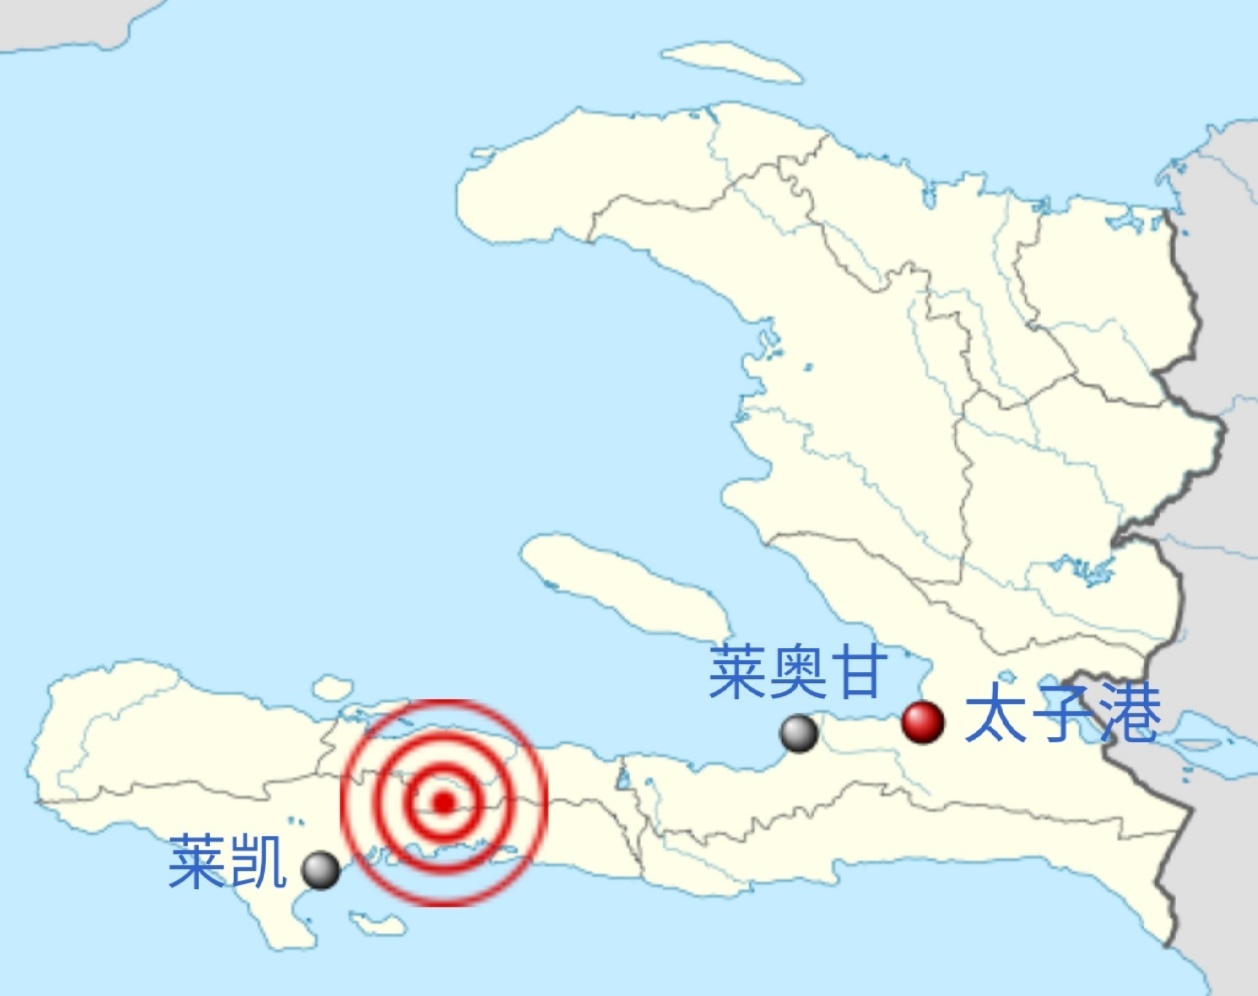 海地强震已致1297人死亡加勒比海岛国危机重重 - 图说世界 - 龙腾网